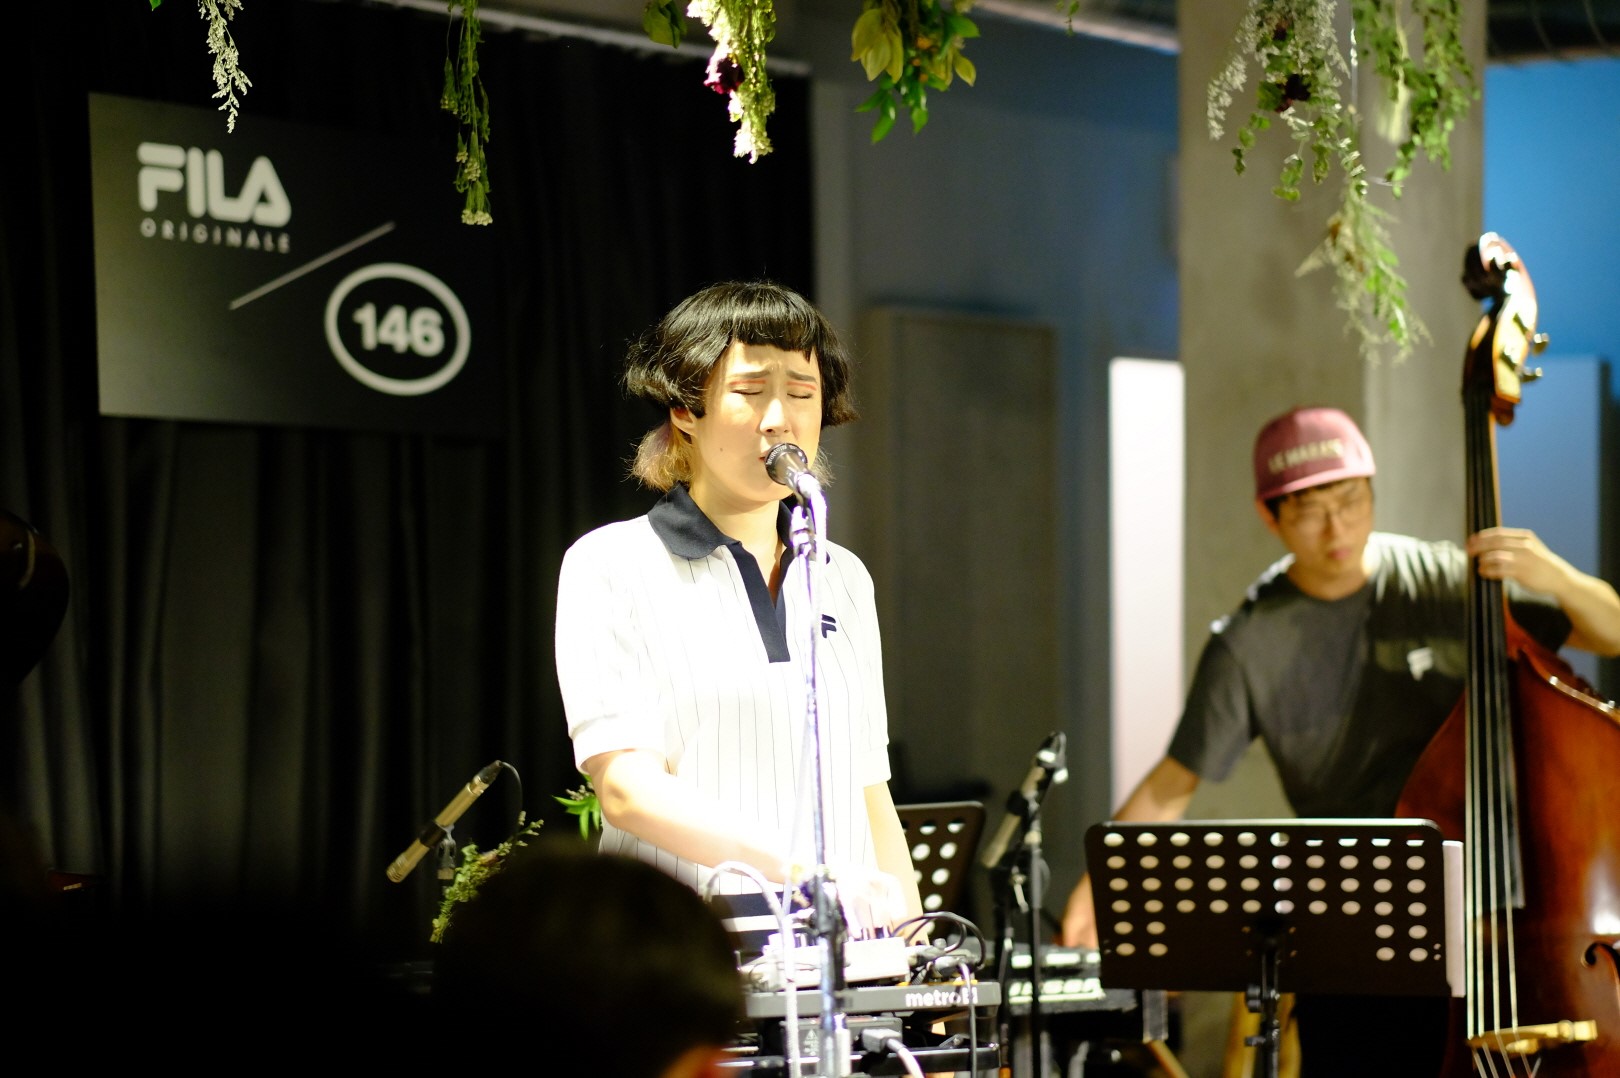 FILA ORIGINALE kicks off new initiative in Seoul